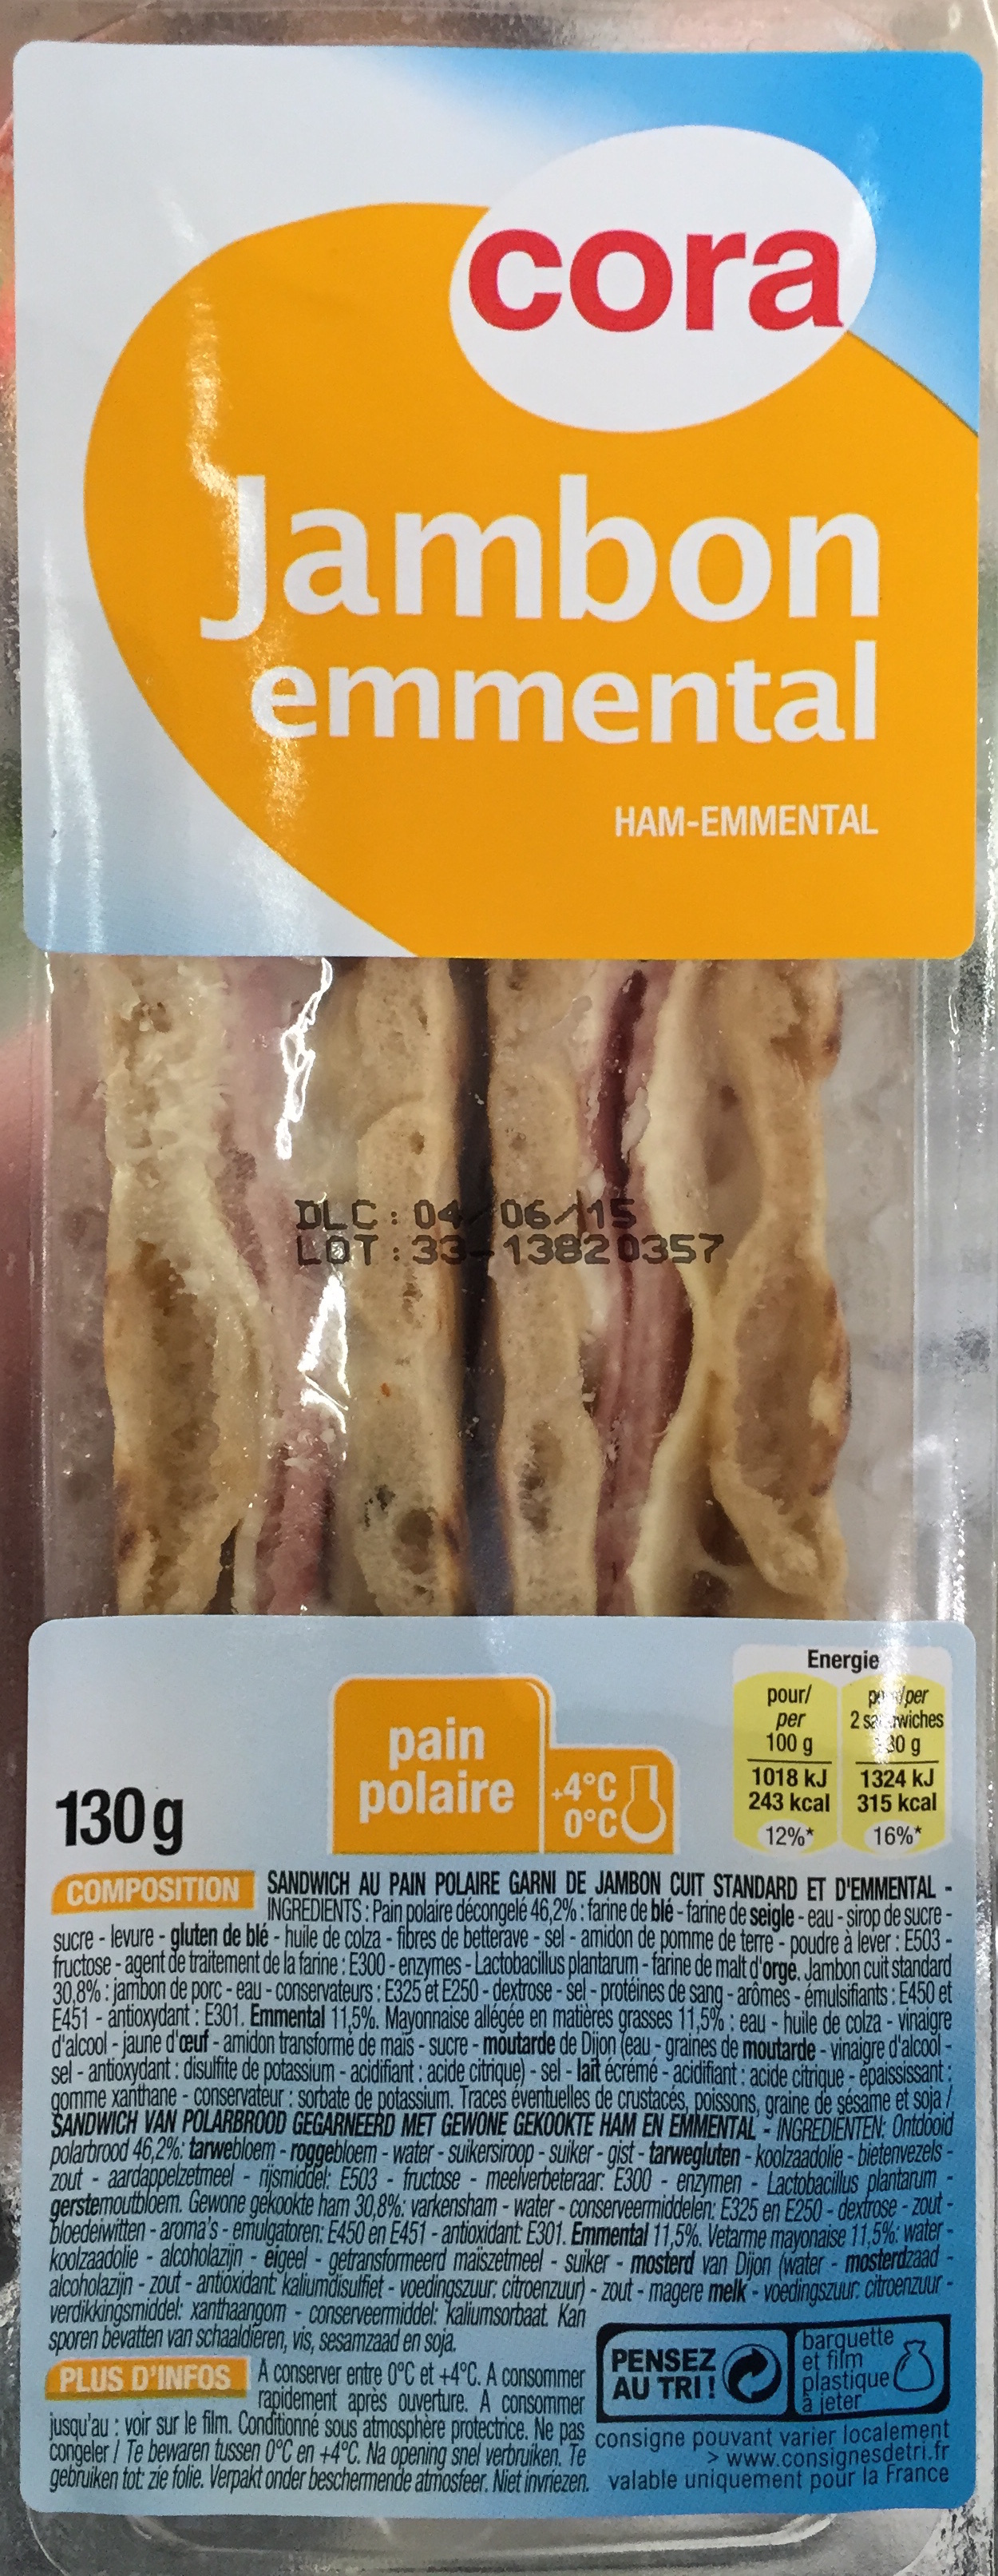 Jambon Emmental - Sandwich au pain polaire - Product - fr